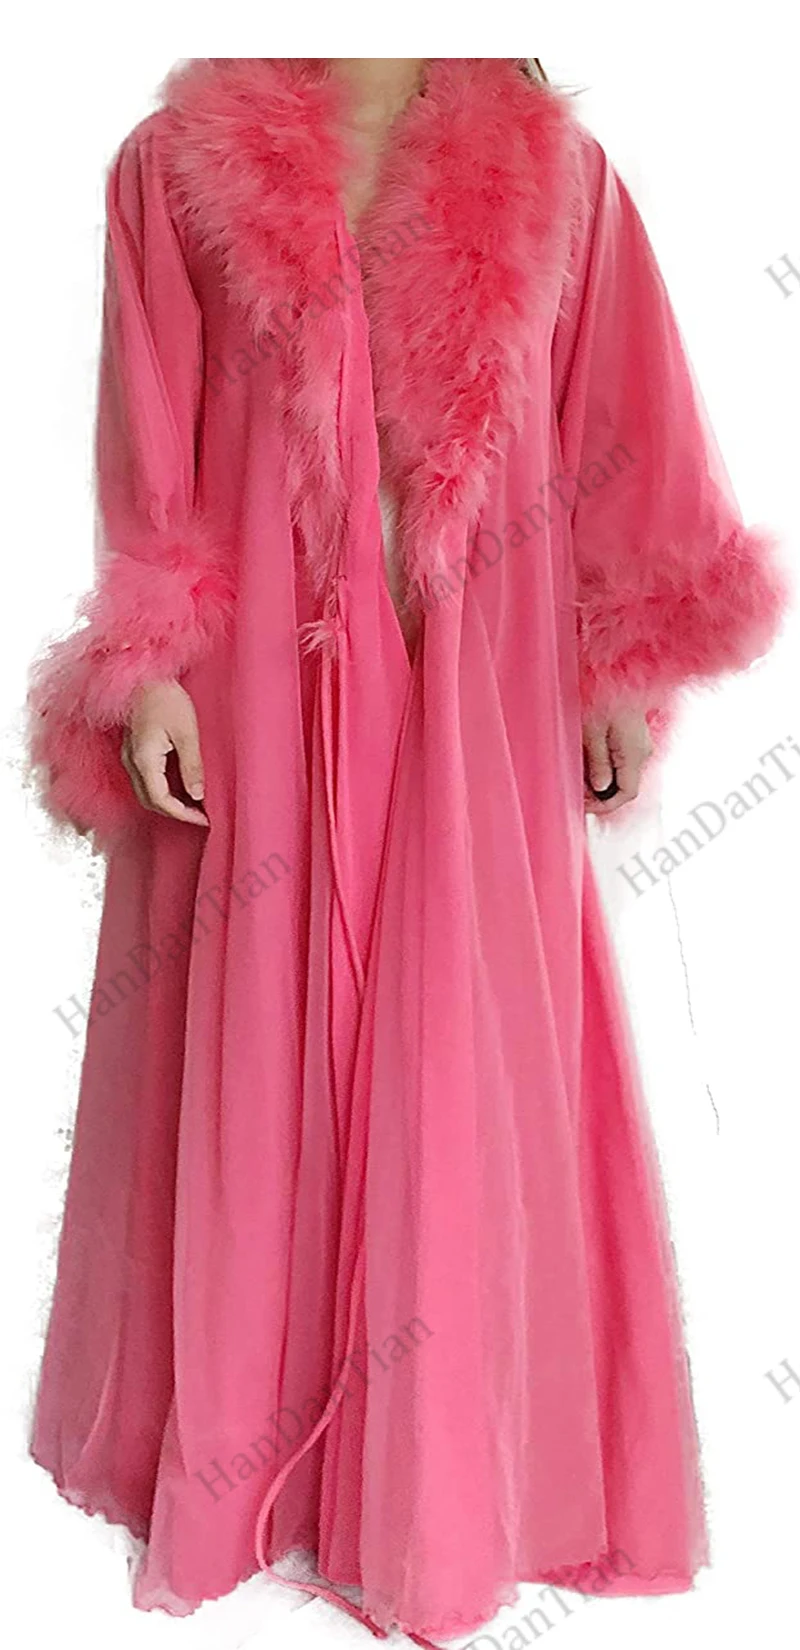 Sexy Feather Robe Illusion Fur Trim Boudoir Robe Nightgown Bathrobe Bridal Lingerie Wedding Scarf